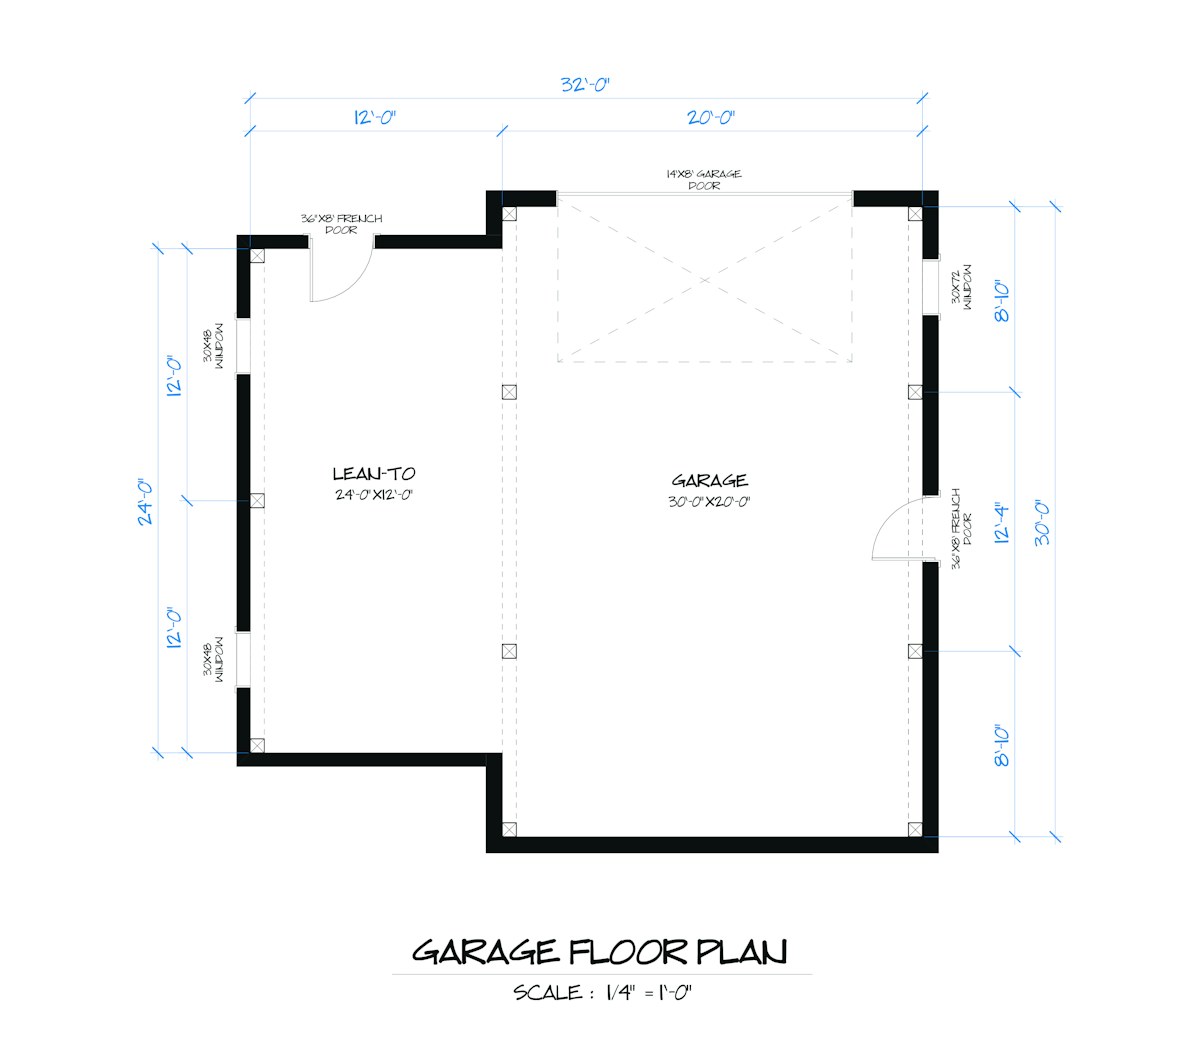 Timberlyne Matterhorn Home Design Garage Floor Plan